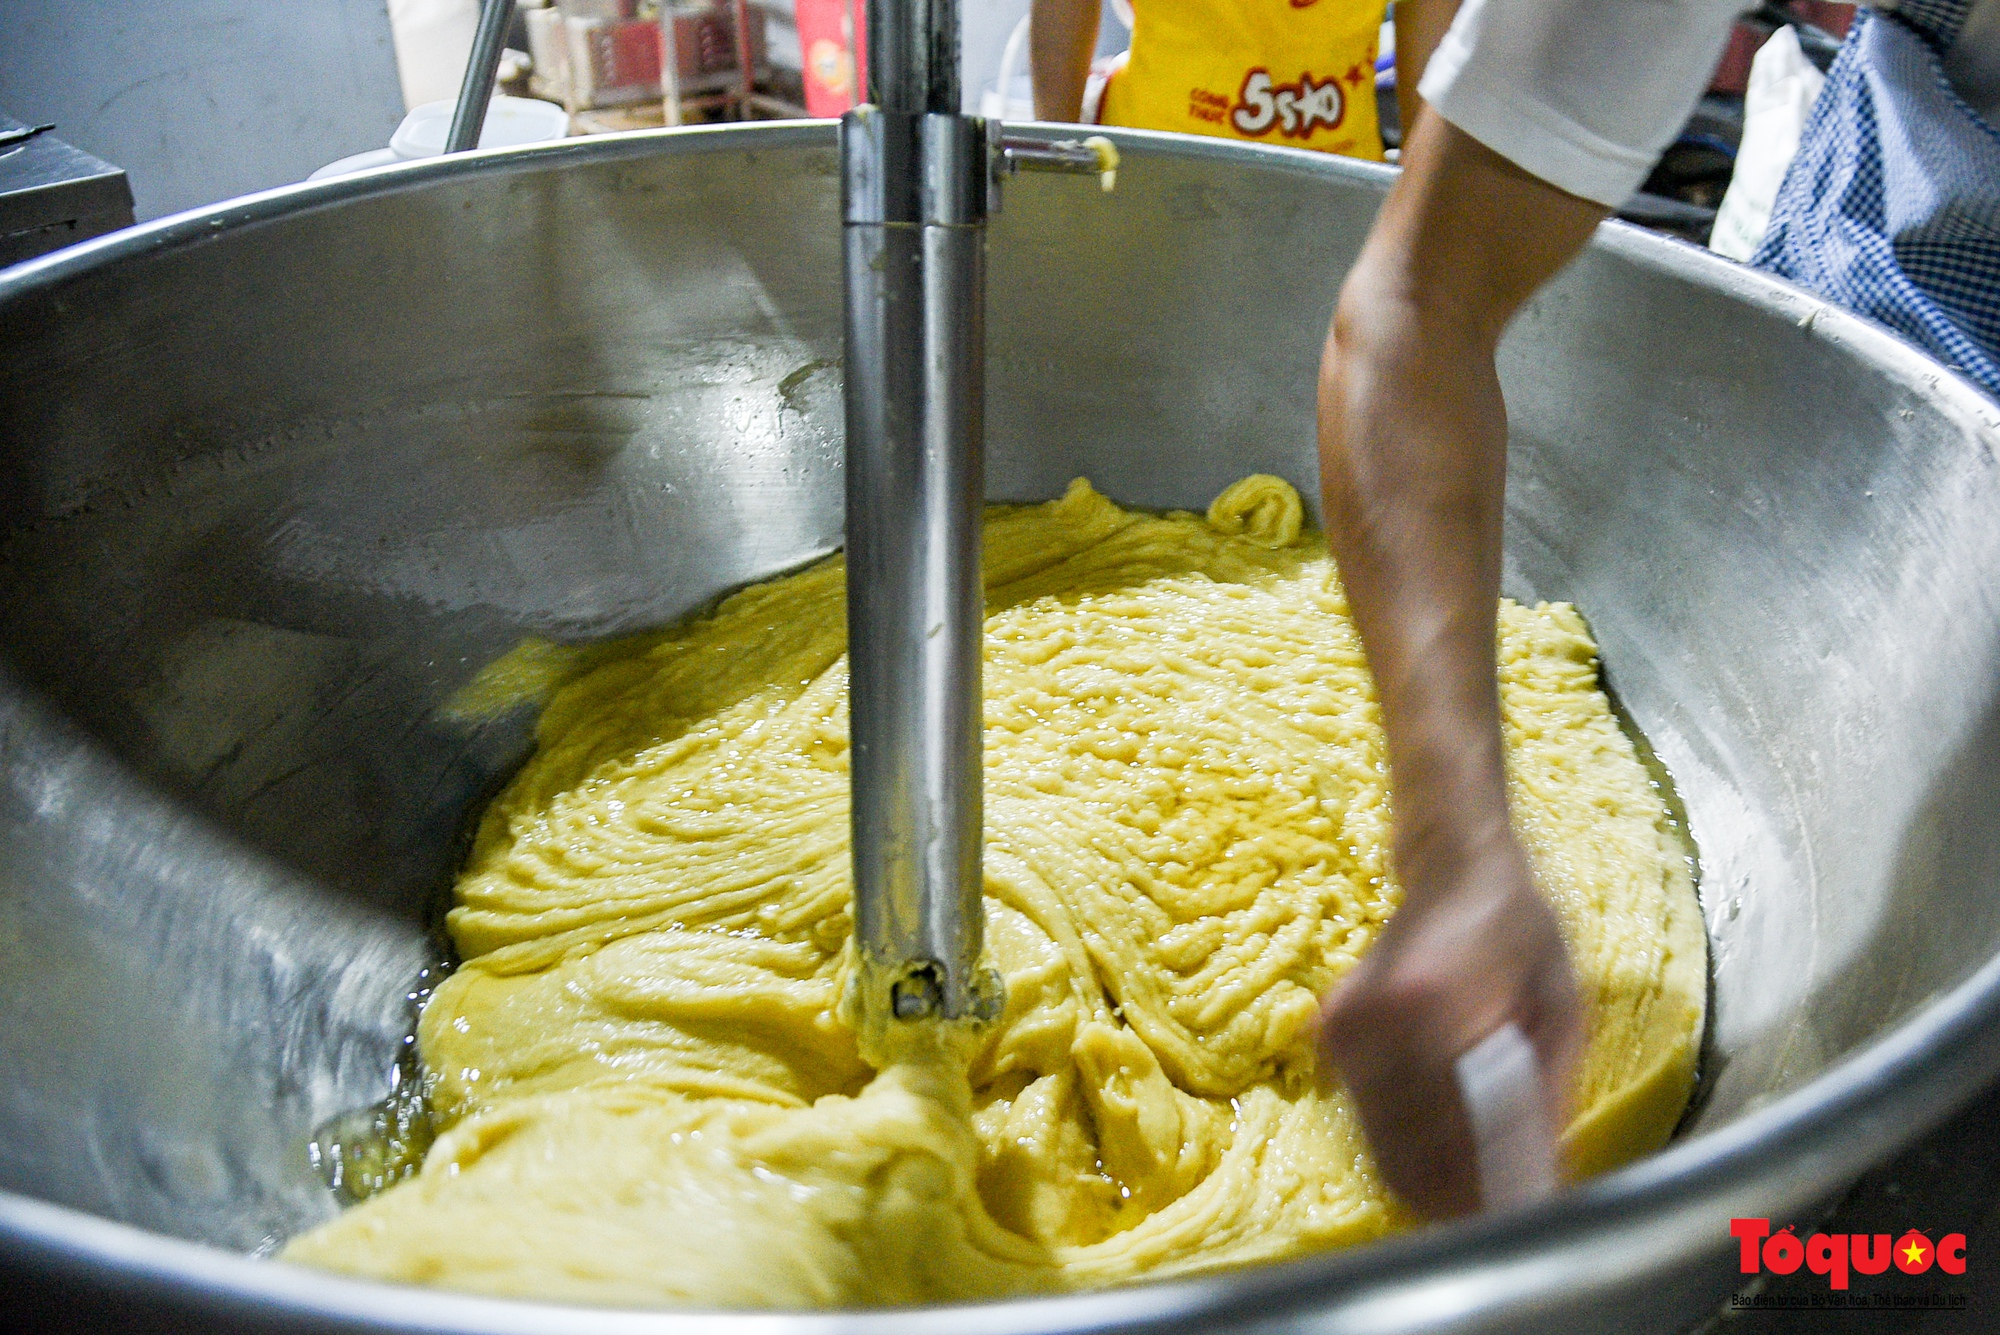 Mục sở thị quy trình sản xuất bánh Trung thu ở thủ phủ sản xuất bánh kẹo lâu đời tại Hà Nội - Ảnh 3.